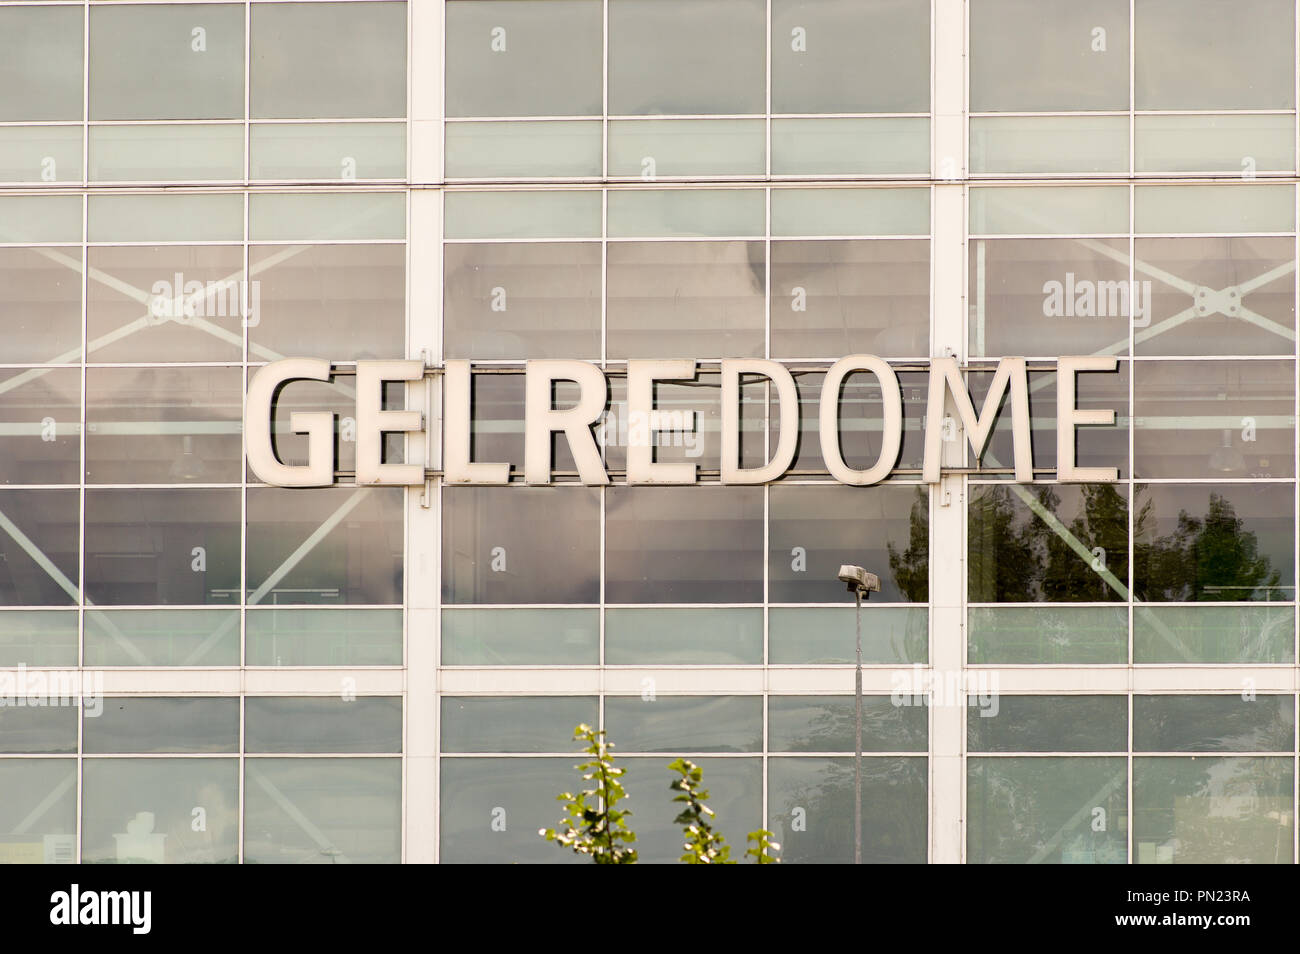 Gelredome, a  facade of a soccer stadium Stock Photo